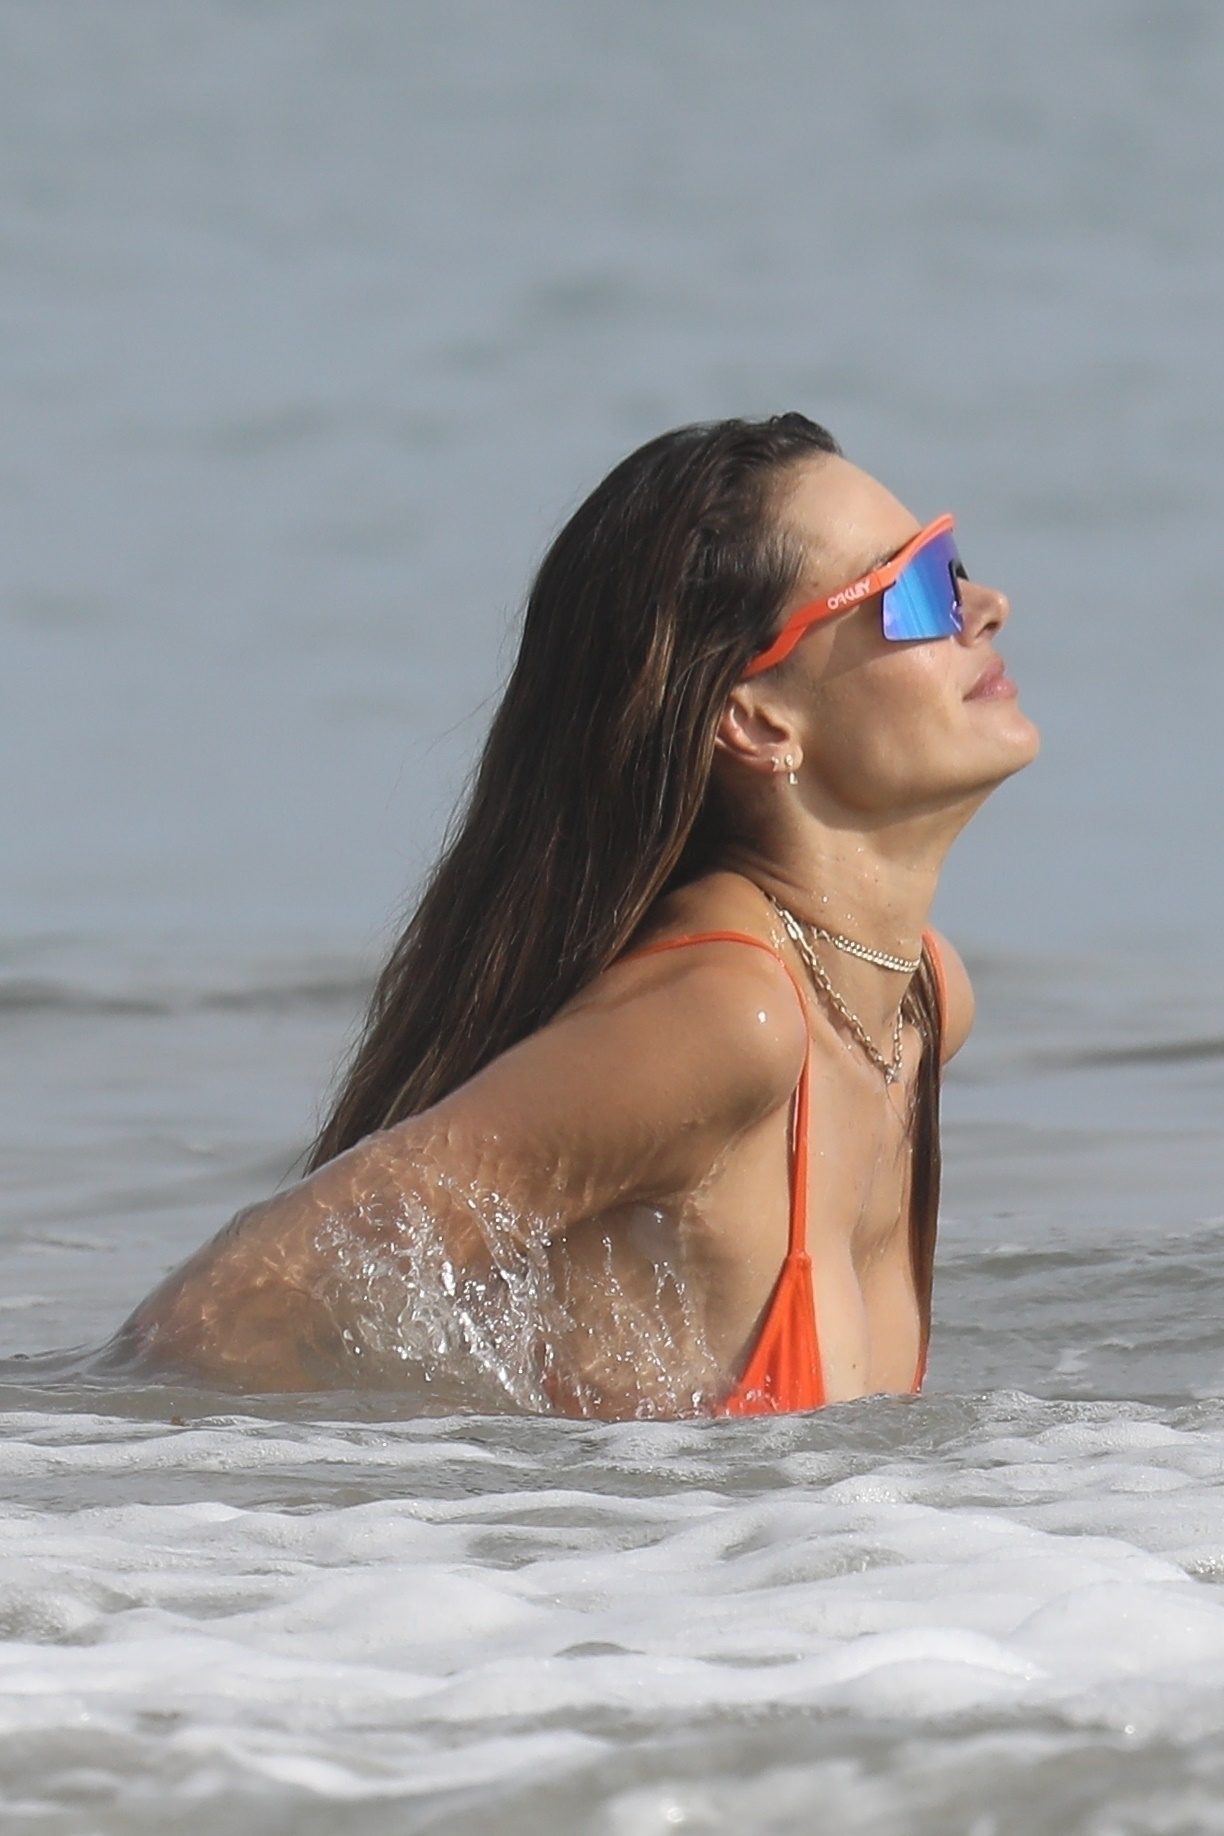 Конфуз на пляже: у Алессандры Амброисо из купальника выскочила грудь. Топ самых откровенных фото бывшего ангела Victoria’s Secret Алессандры Амбросио